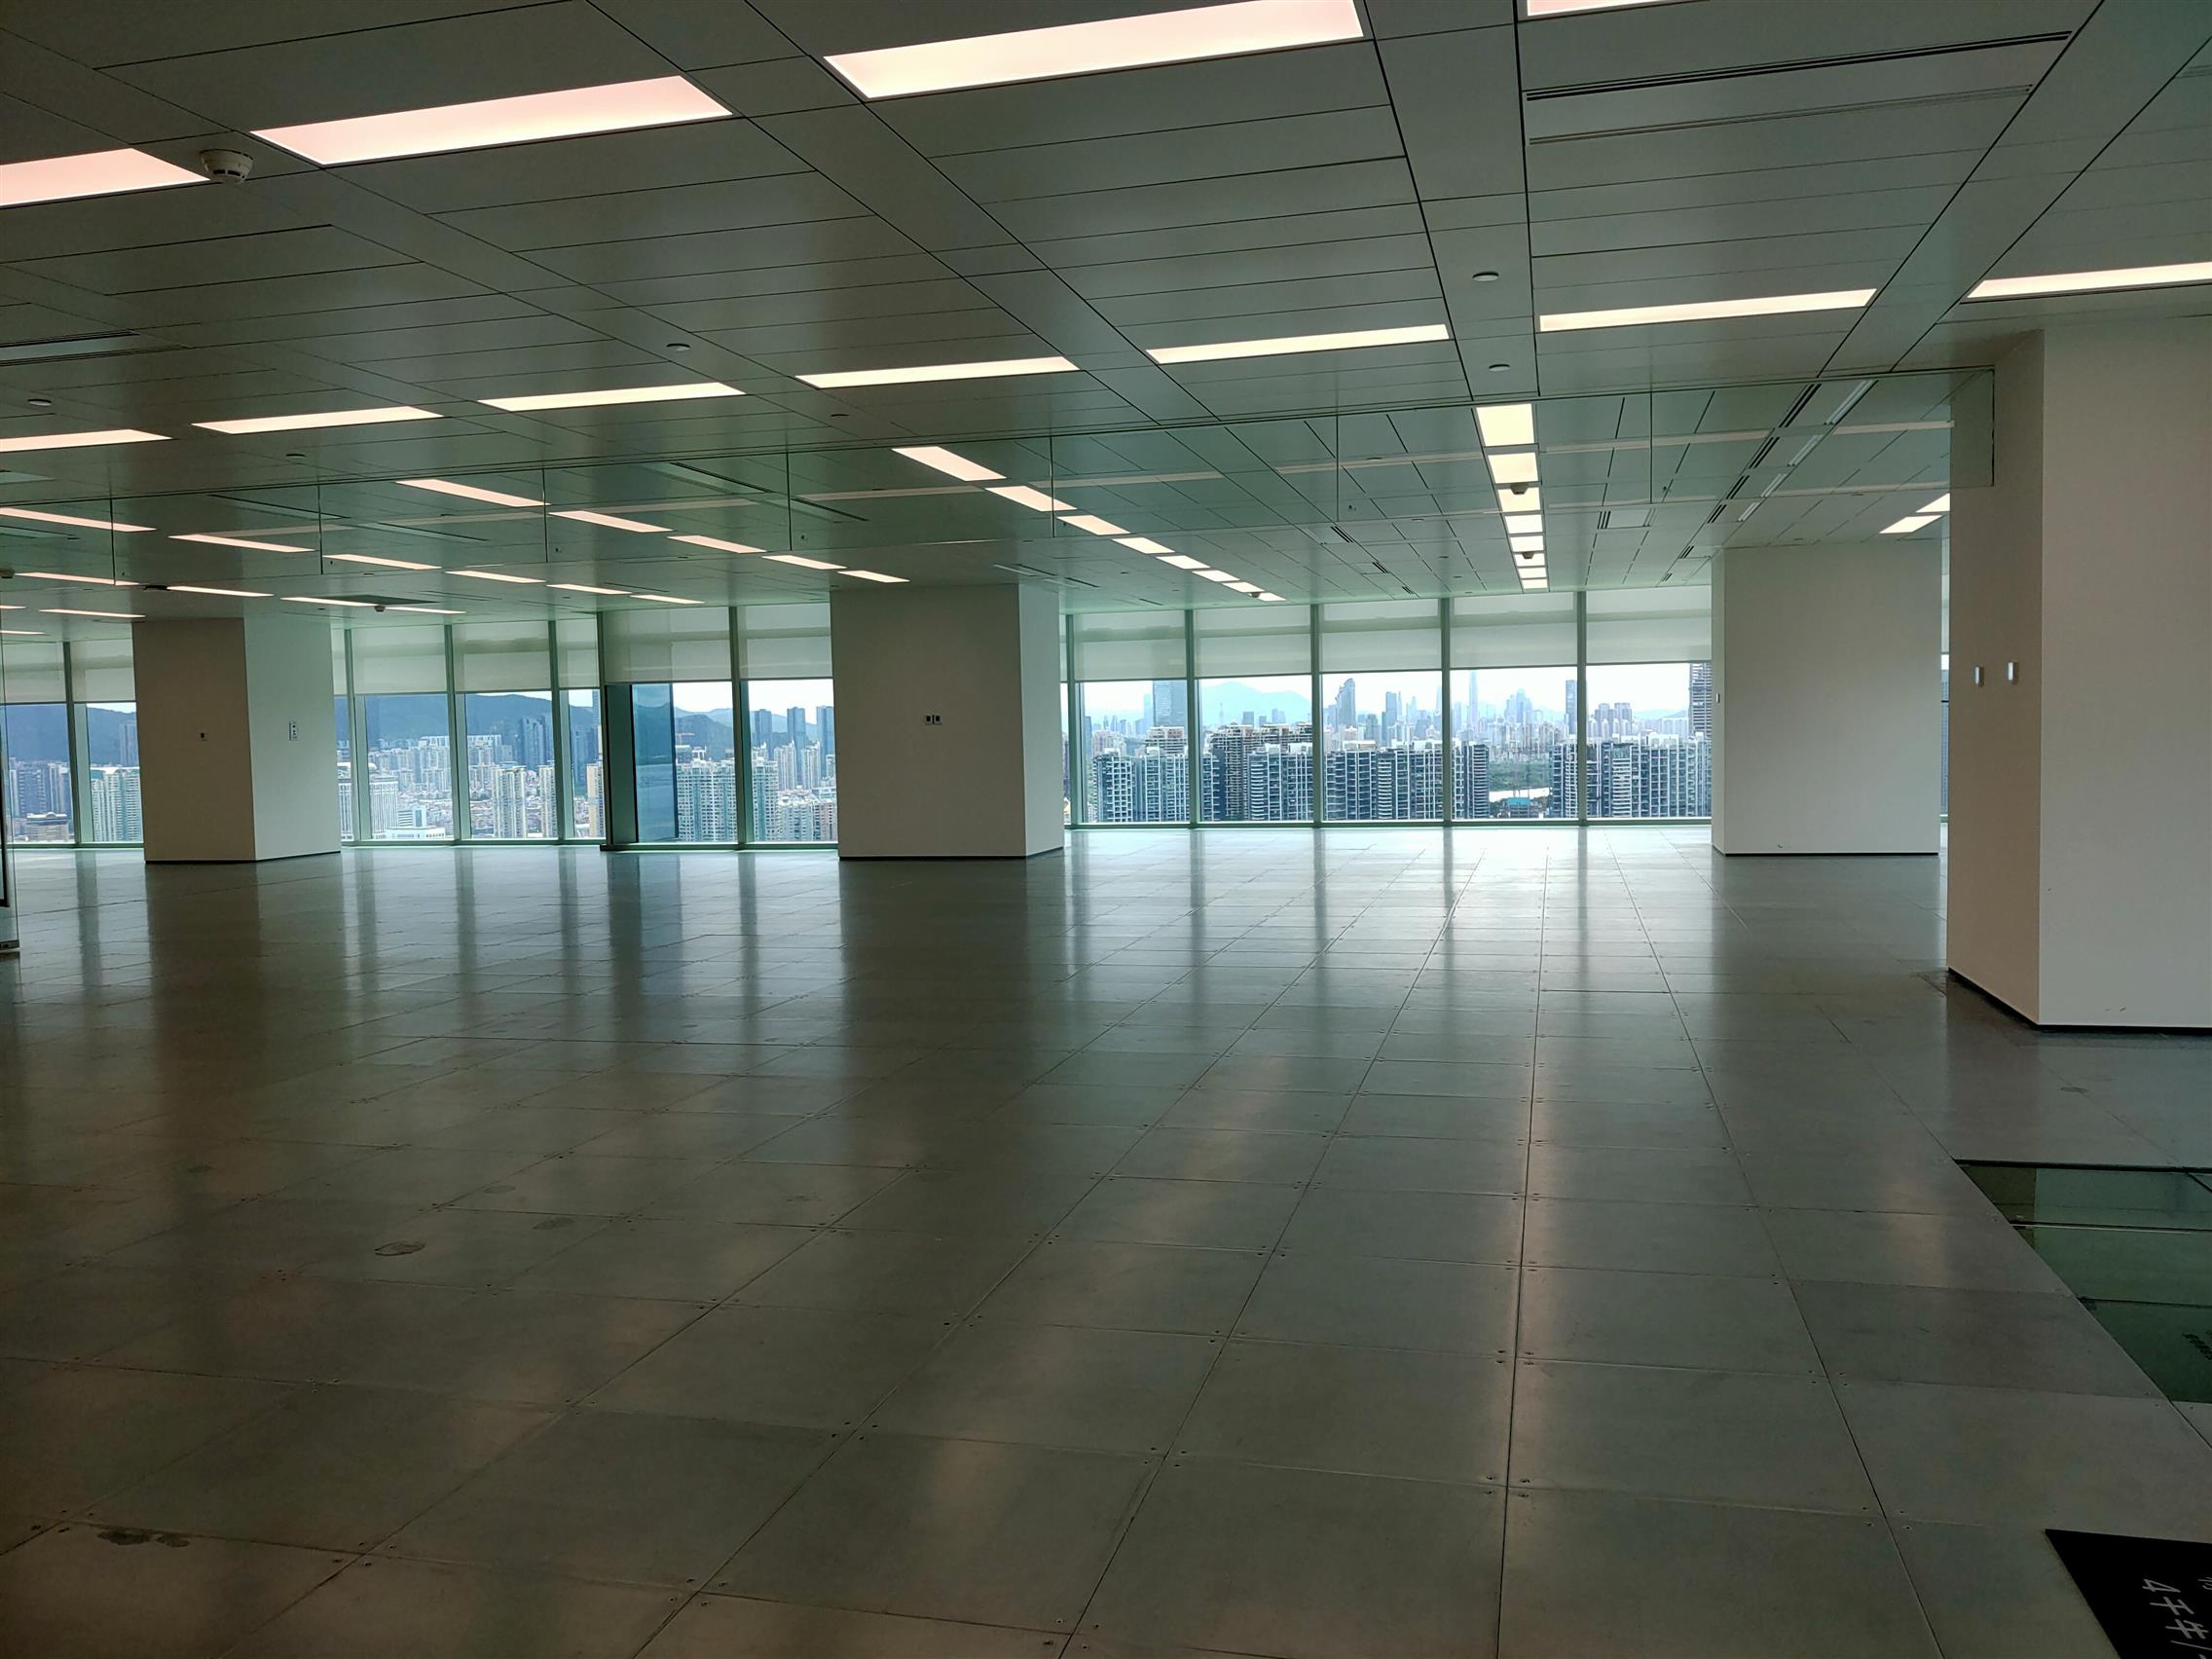 南山科兴科学园管理处 提供不同规格的办公空间 灵活的办公空间